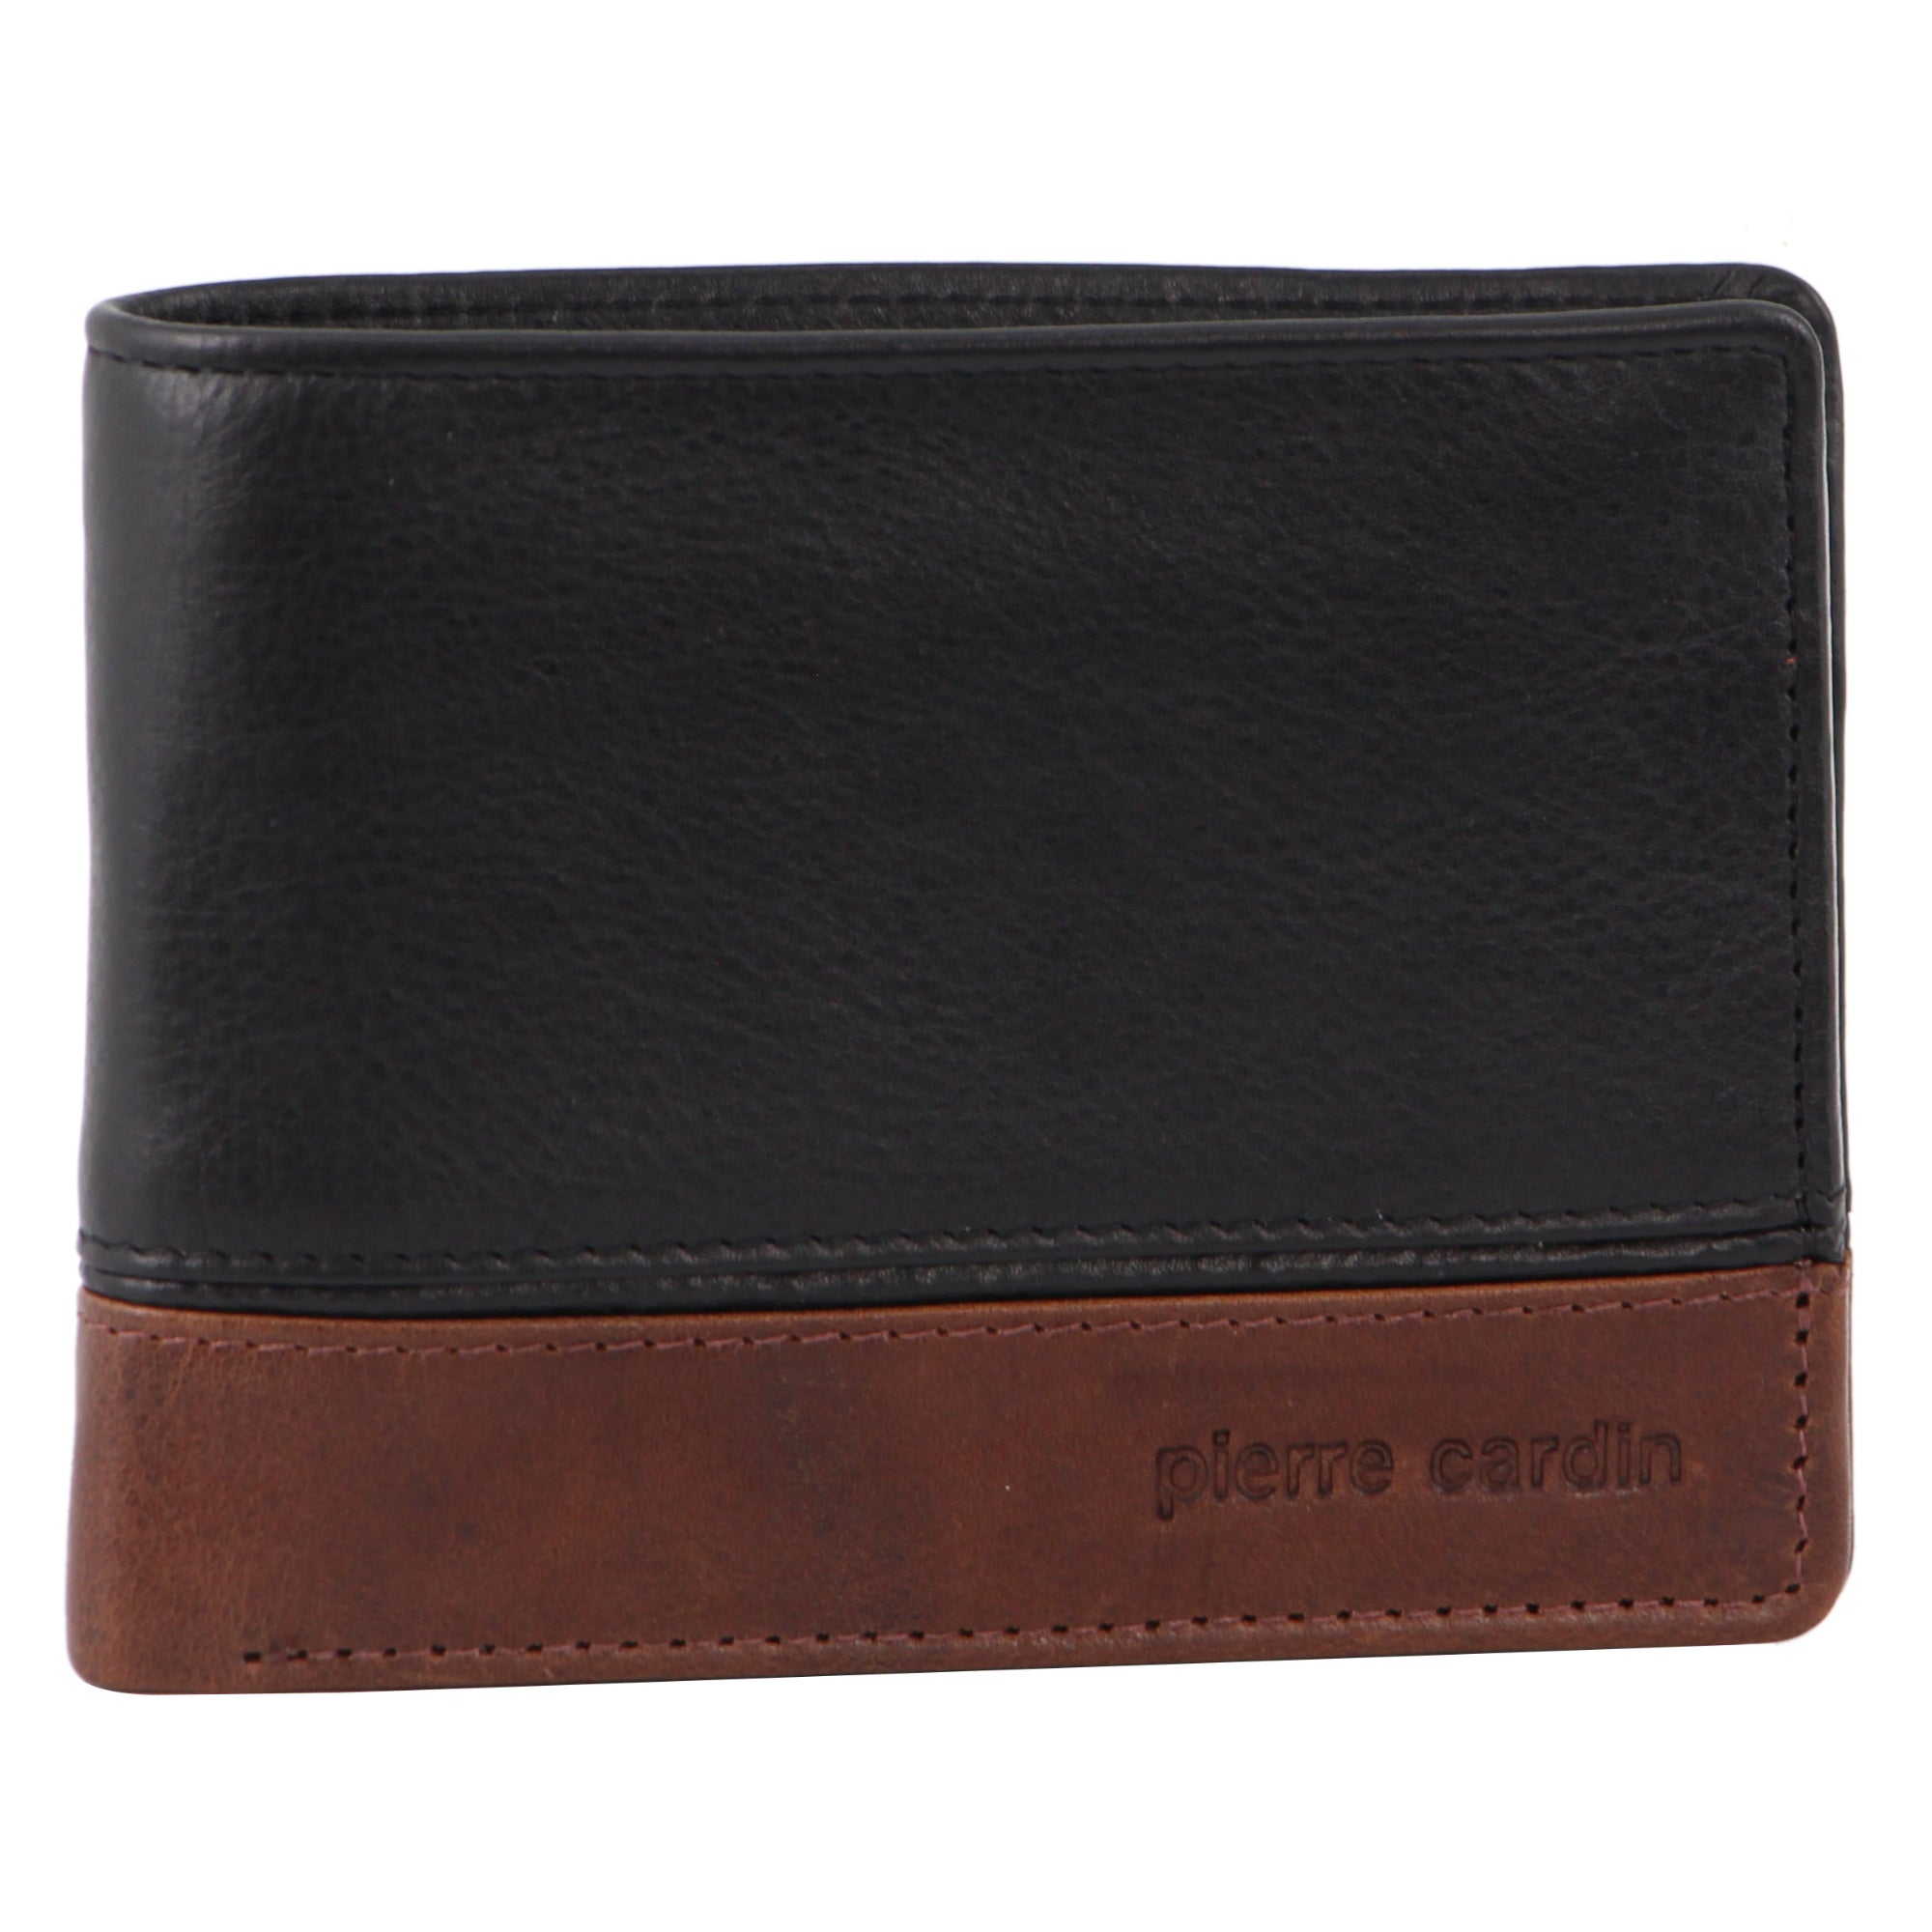 Pierre Cardin Leather 2-Tone Men's Tri-Fold Wallet in Black-Cognac